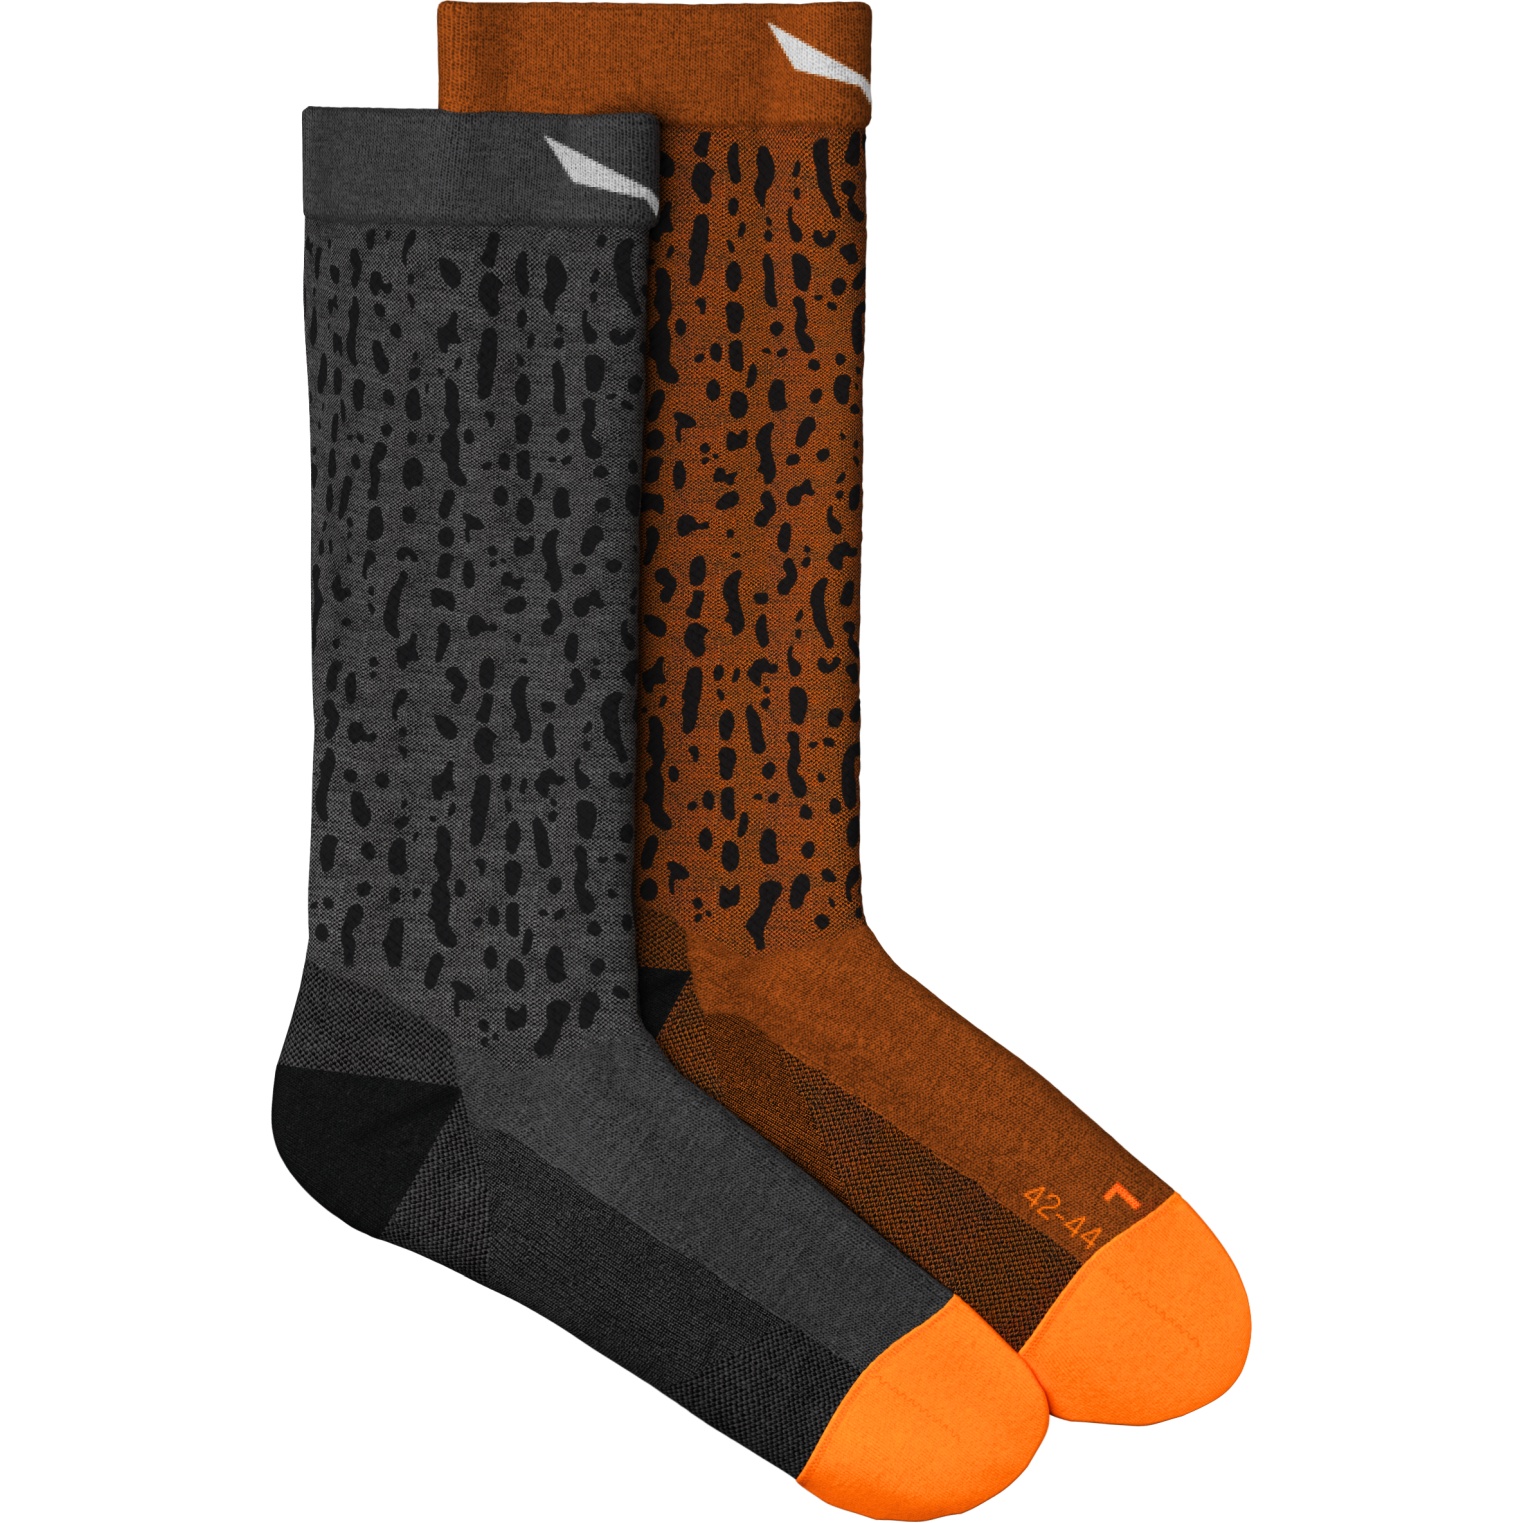 Produktbild von Salewa Mountain Trainer Salamander Alpine Merino Crew Socken - medium grey melange 621